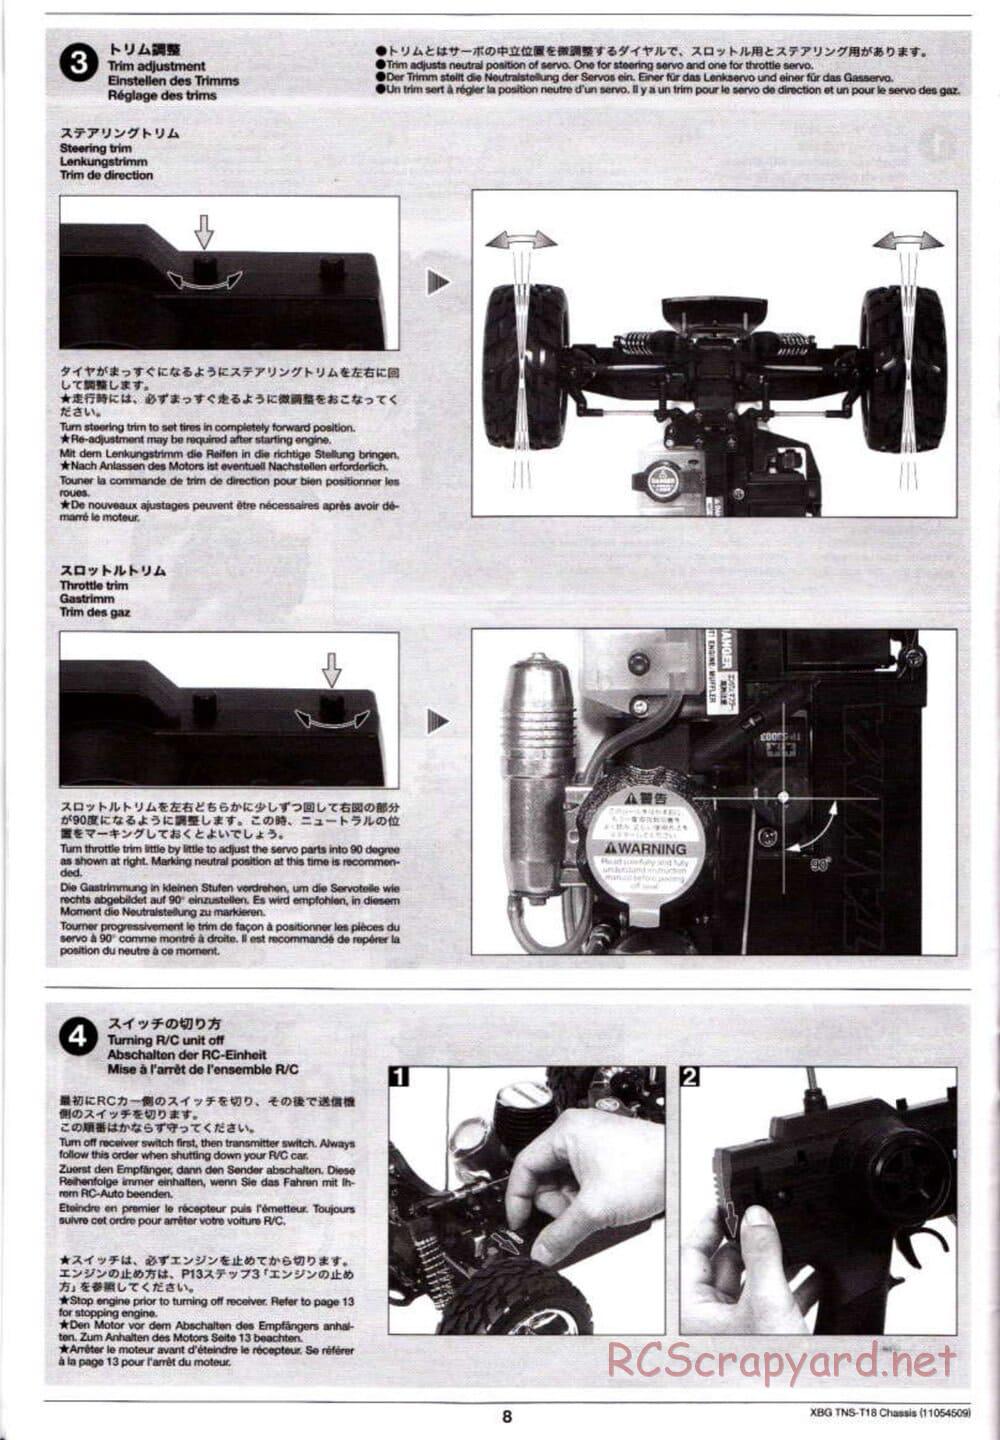 Tamiya - TNS-T18 Chassis - Manual - Page 8